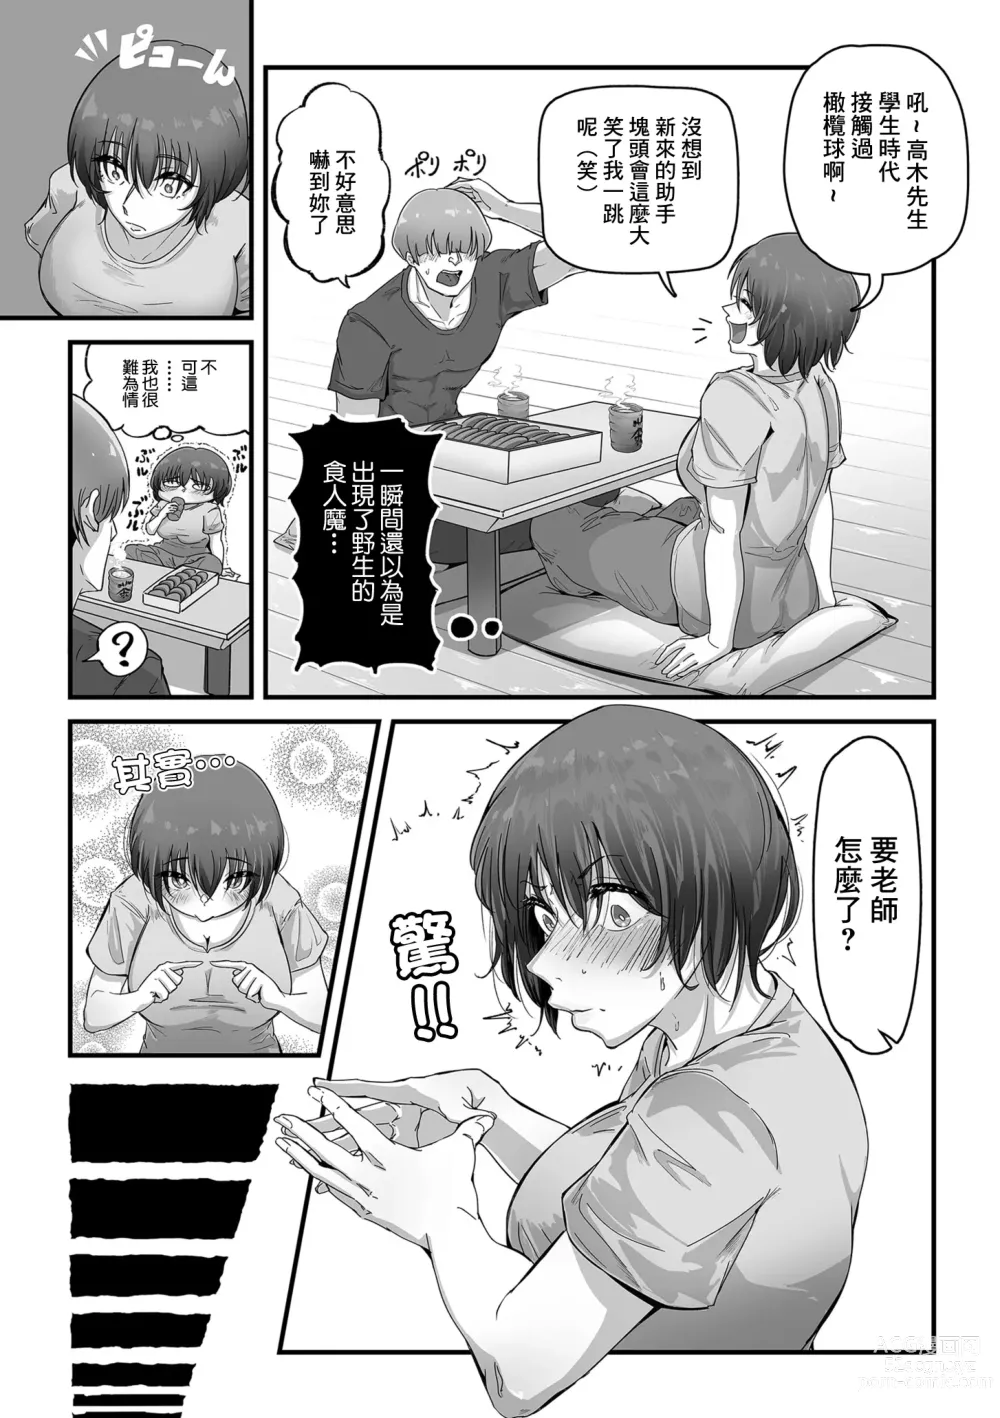 Page 7 of manga 要老師的巨根資料收集!